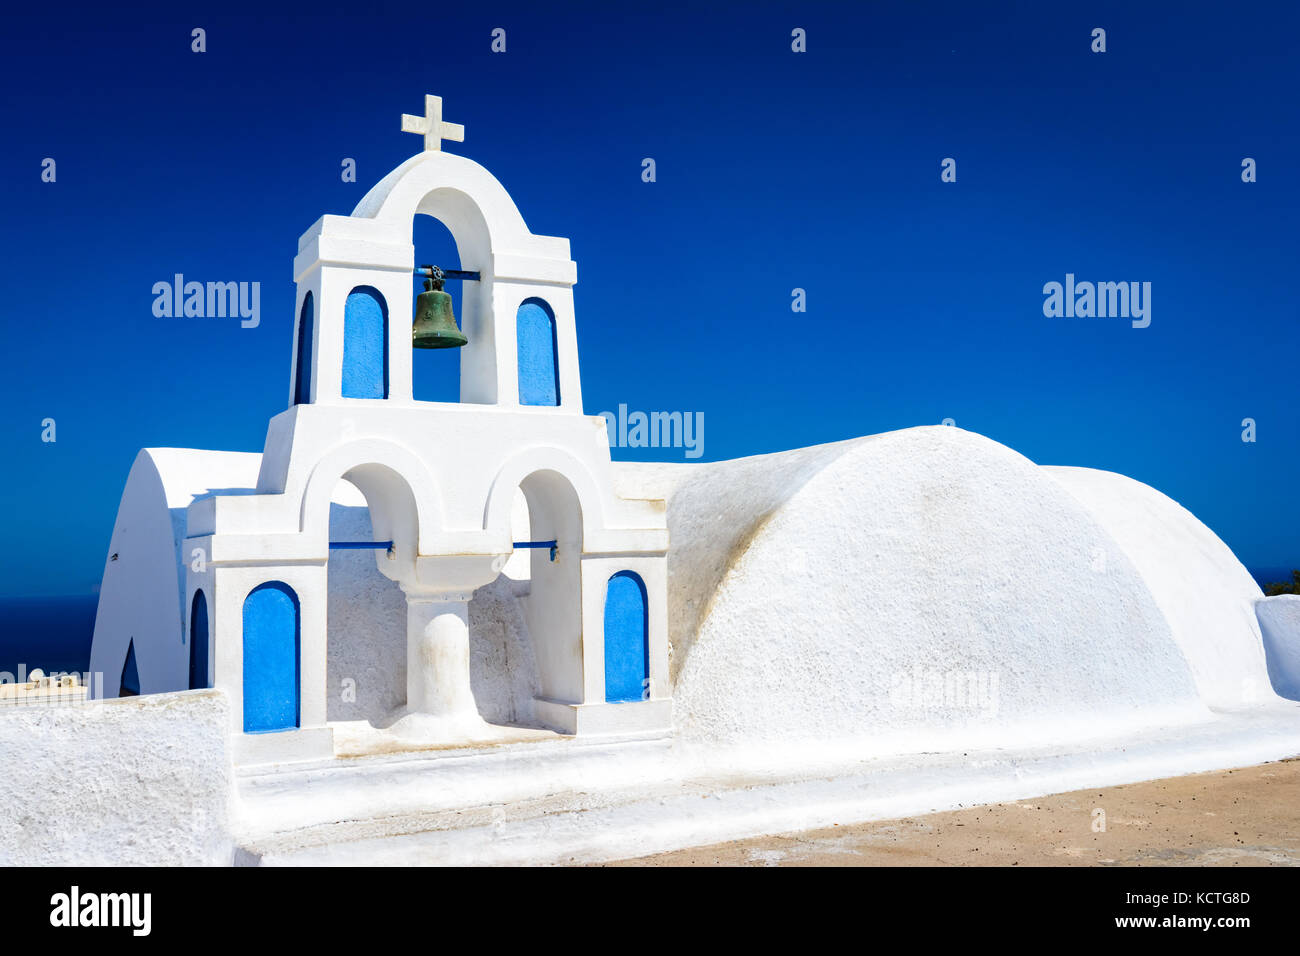 Les cloches de l'église sur une église orthodoxe grecque donnant sur la mer Égée, dans la ville de Oia sur l'île de Santorin dans les Cyclades au large de la côte de main Banque D'Images